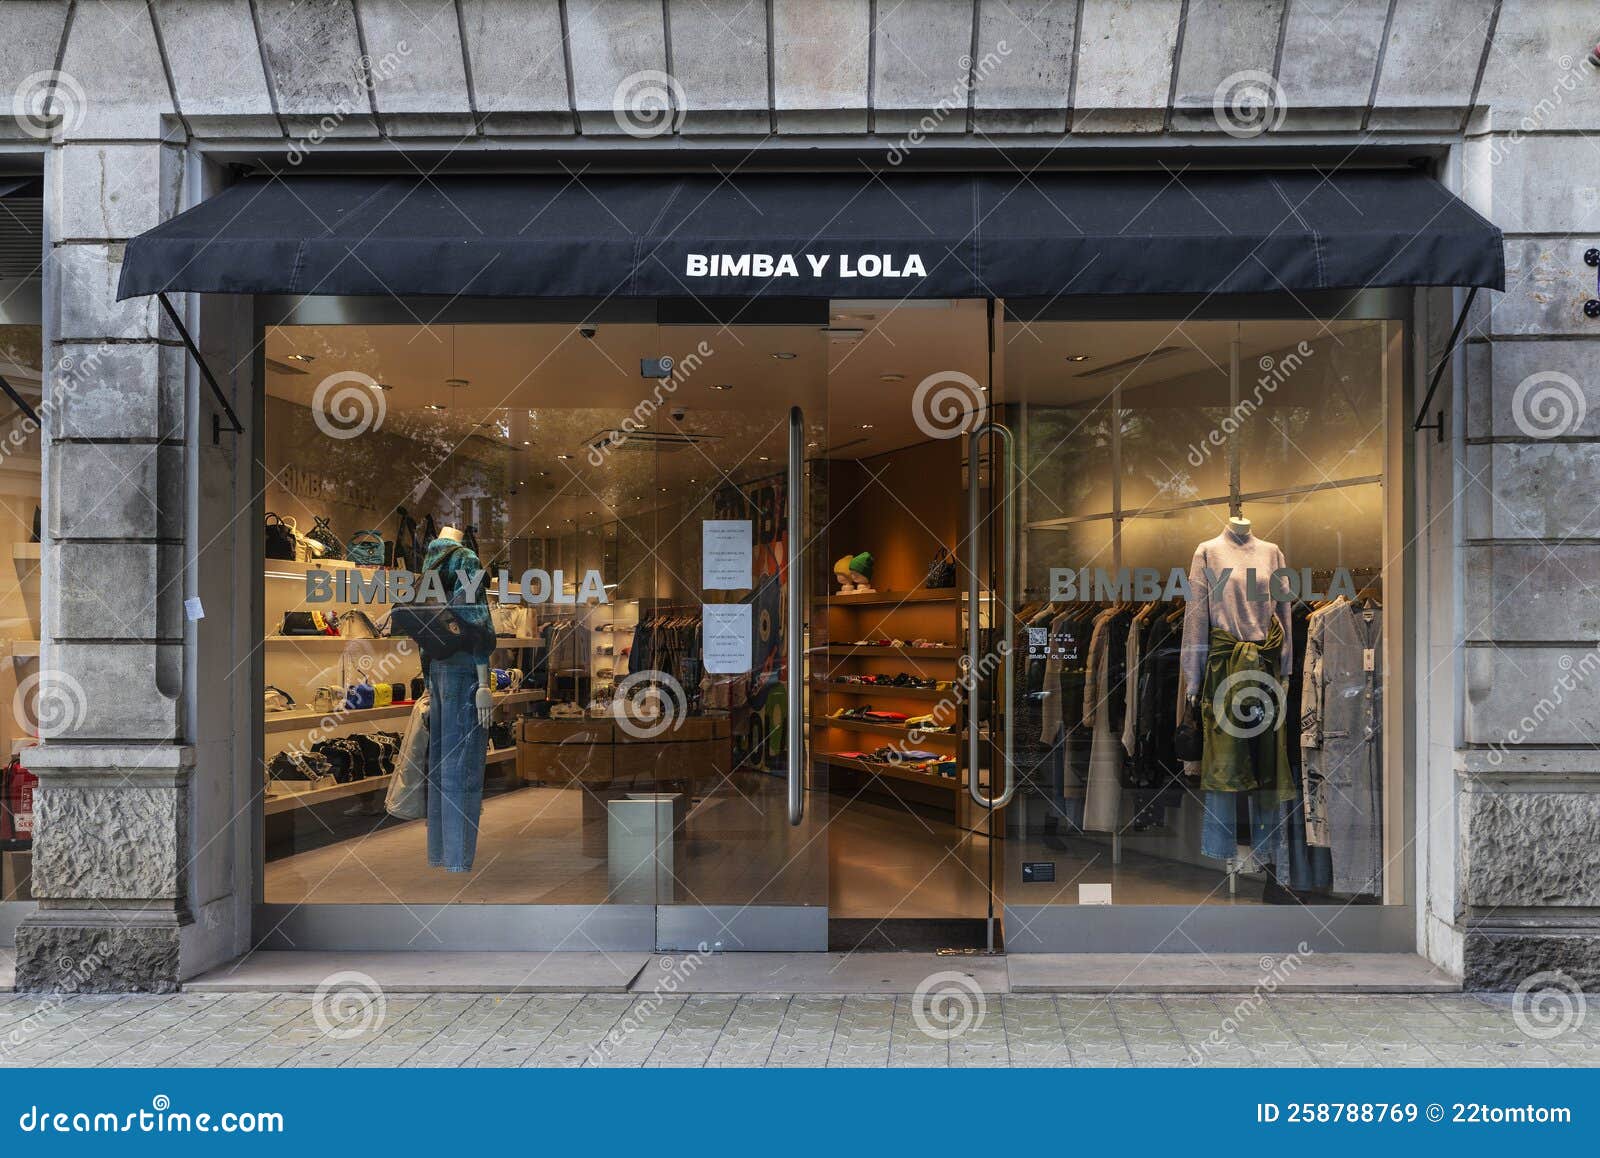 Tienda De Ropa Bimba Y Lola En Barcelona España Imagen de editorial Imagen de negocios, marca: 258788769